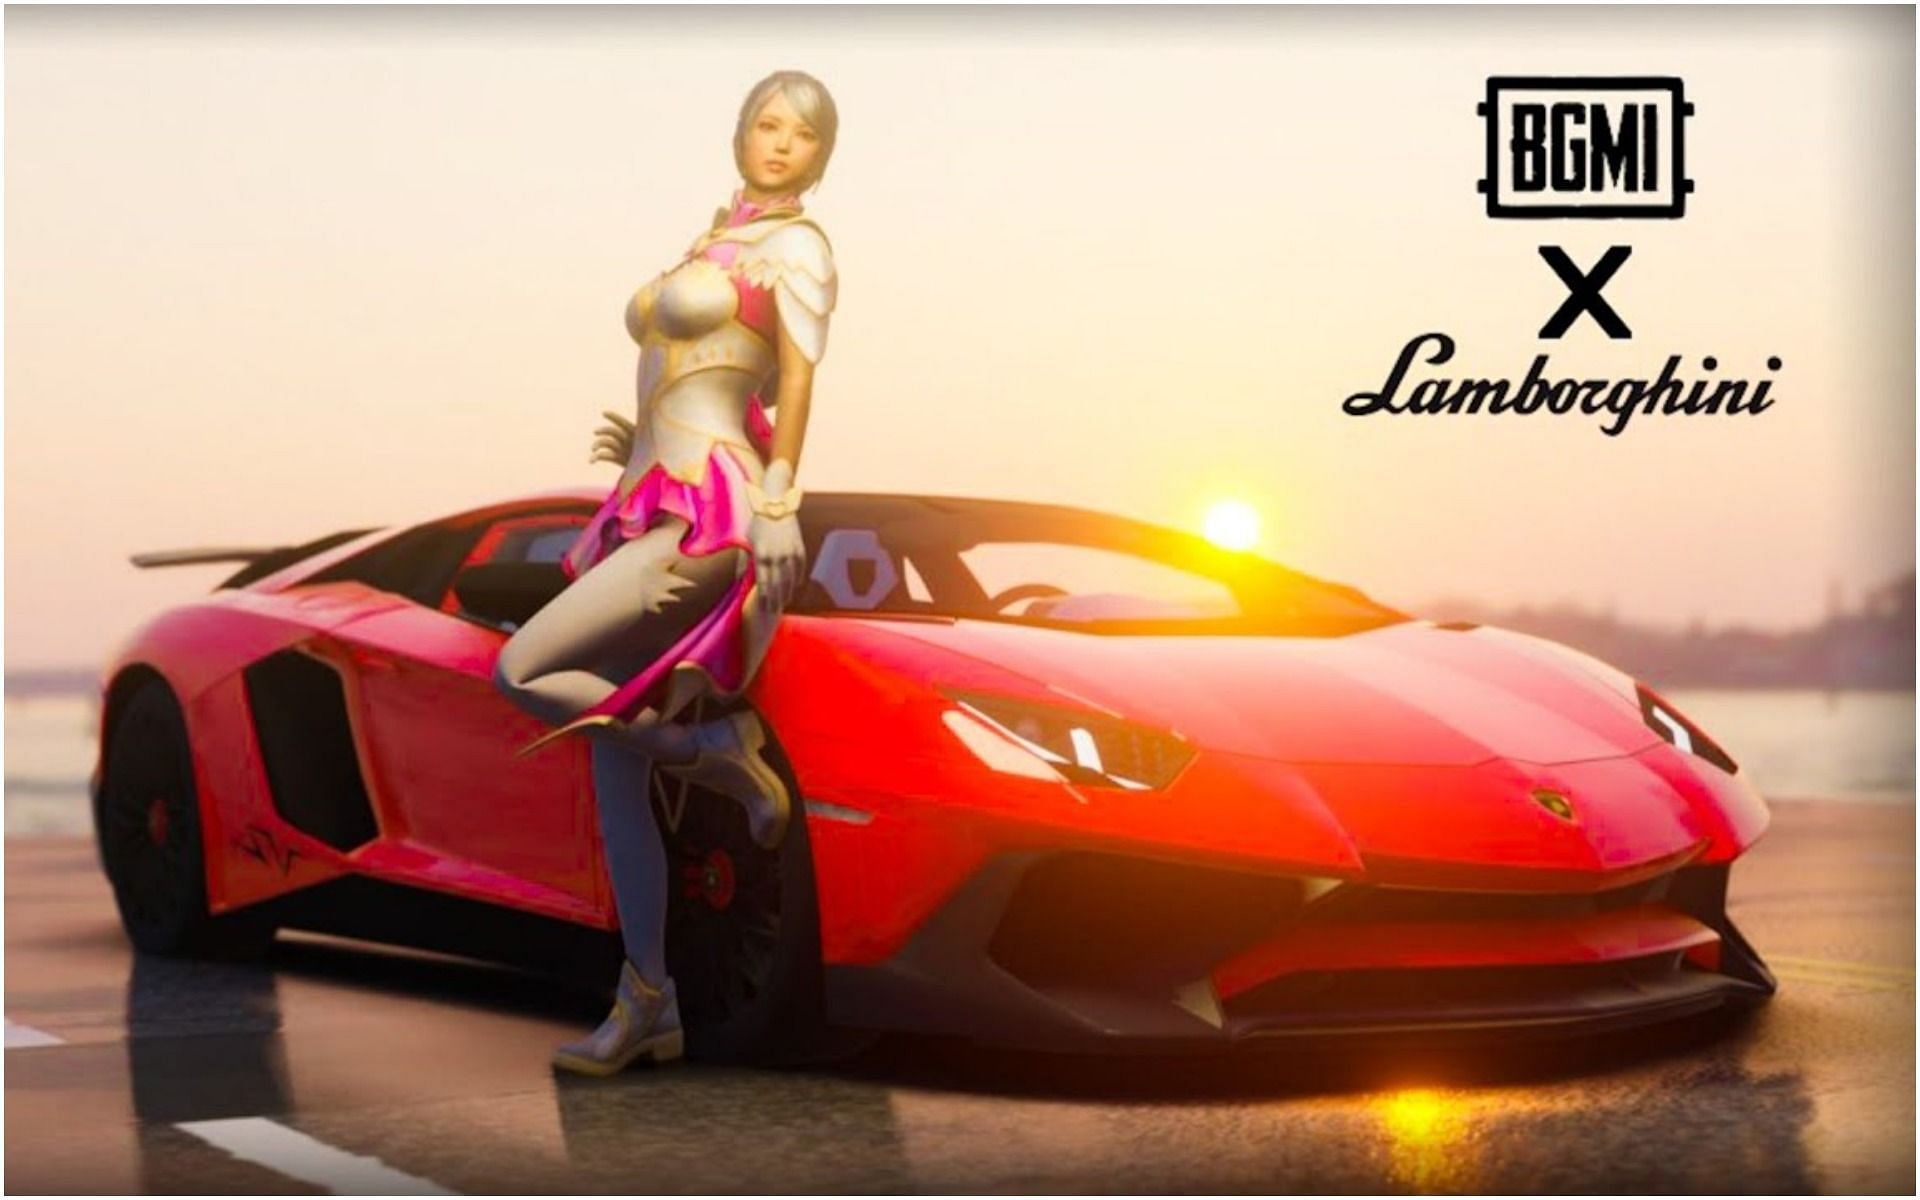 Spending UC to get Lamborghini skins in BGMI (Image via Super Saiyan Gaming/YouTube)